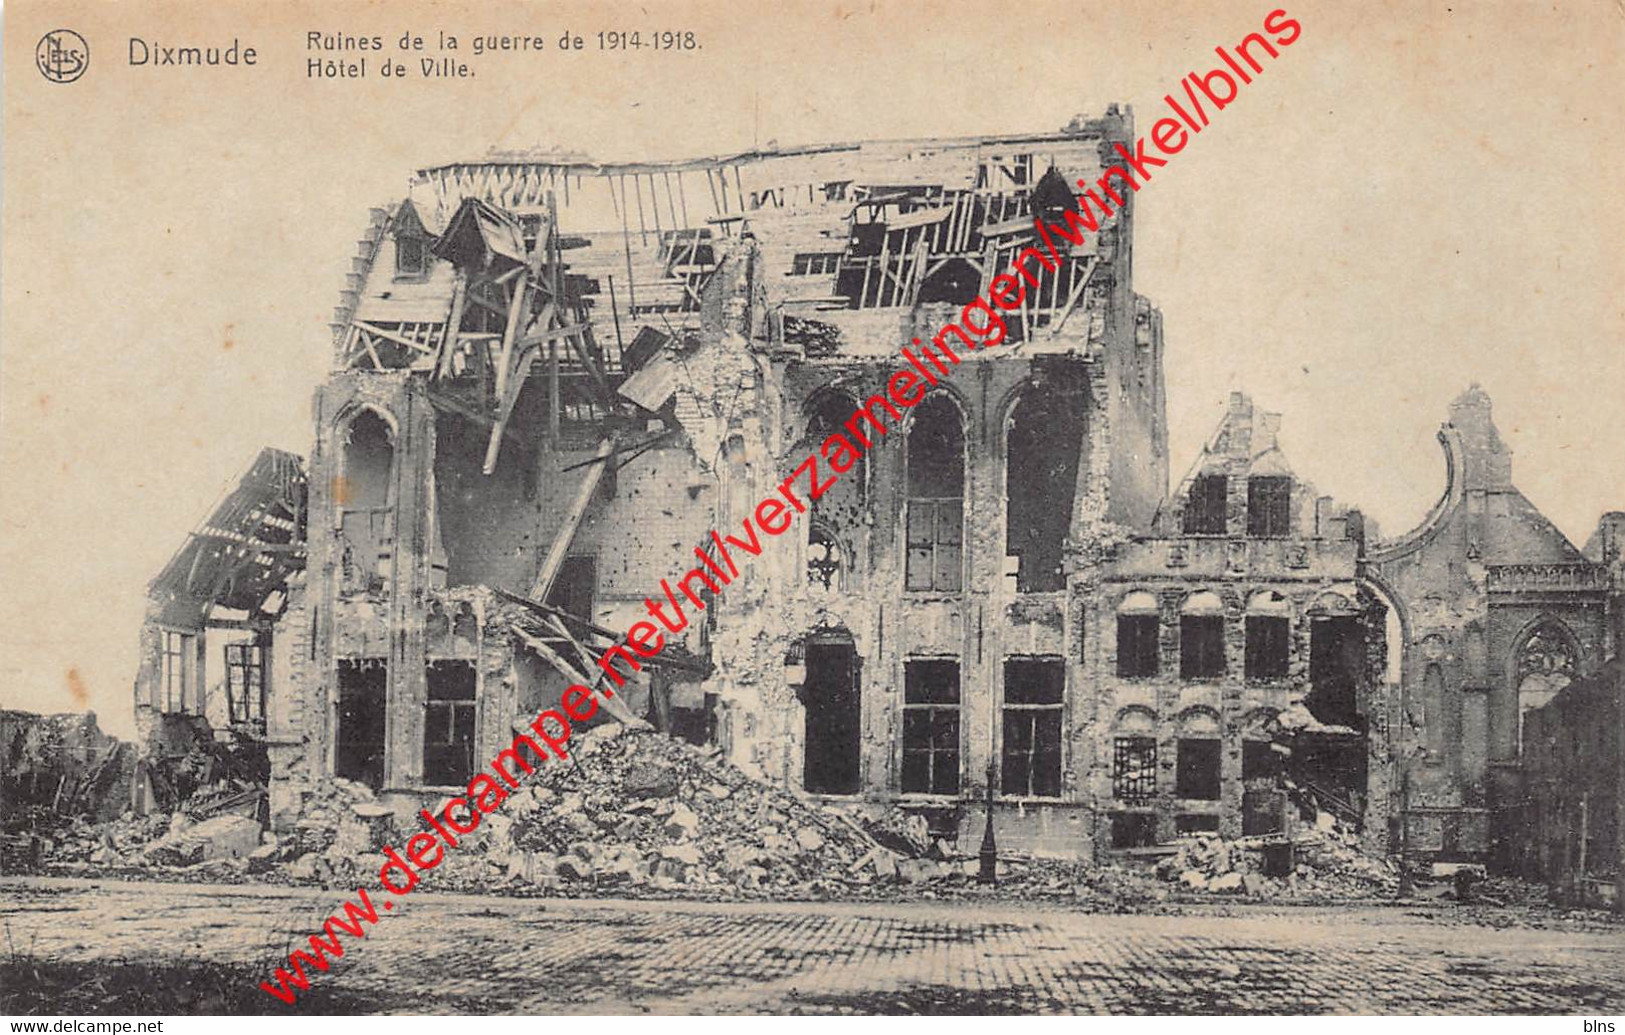 Dixmude - Ruins Of The War 1914-1918 - Hôtel De Ville Stadhuis Town Hall - Ruines De La Guerre - Diksmuide - Diksmuide